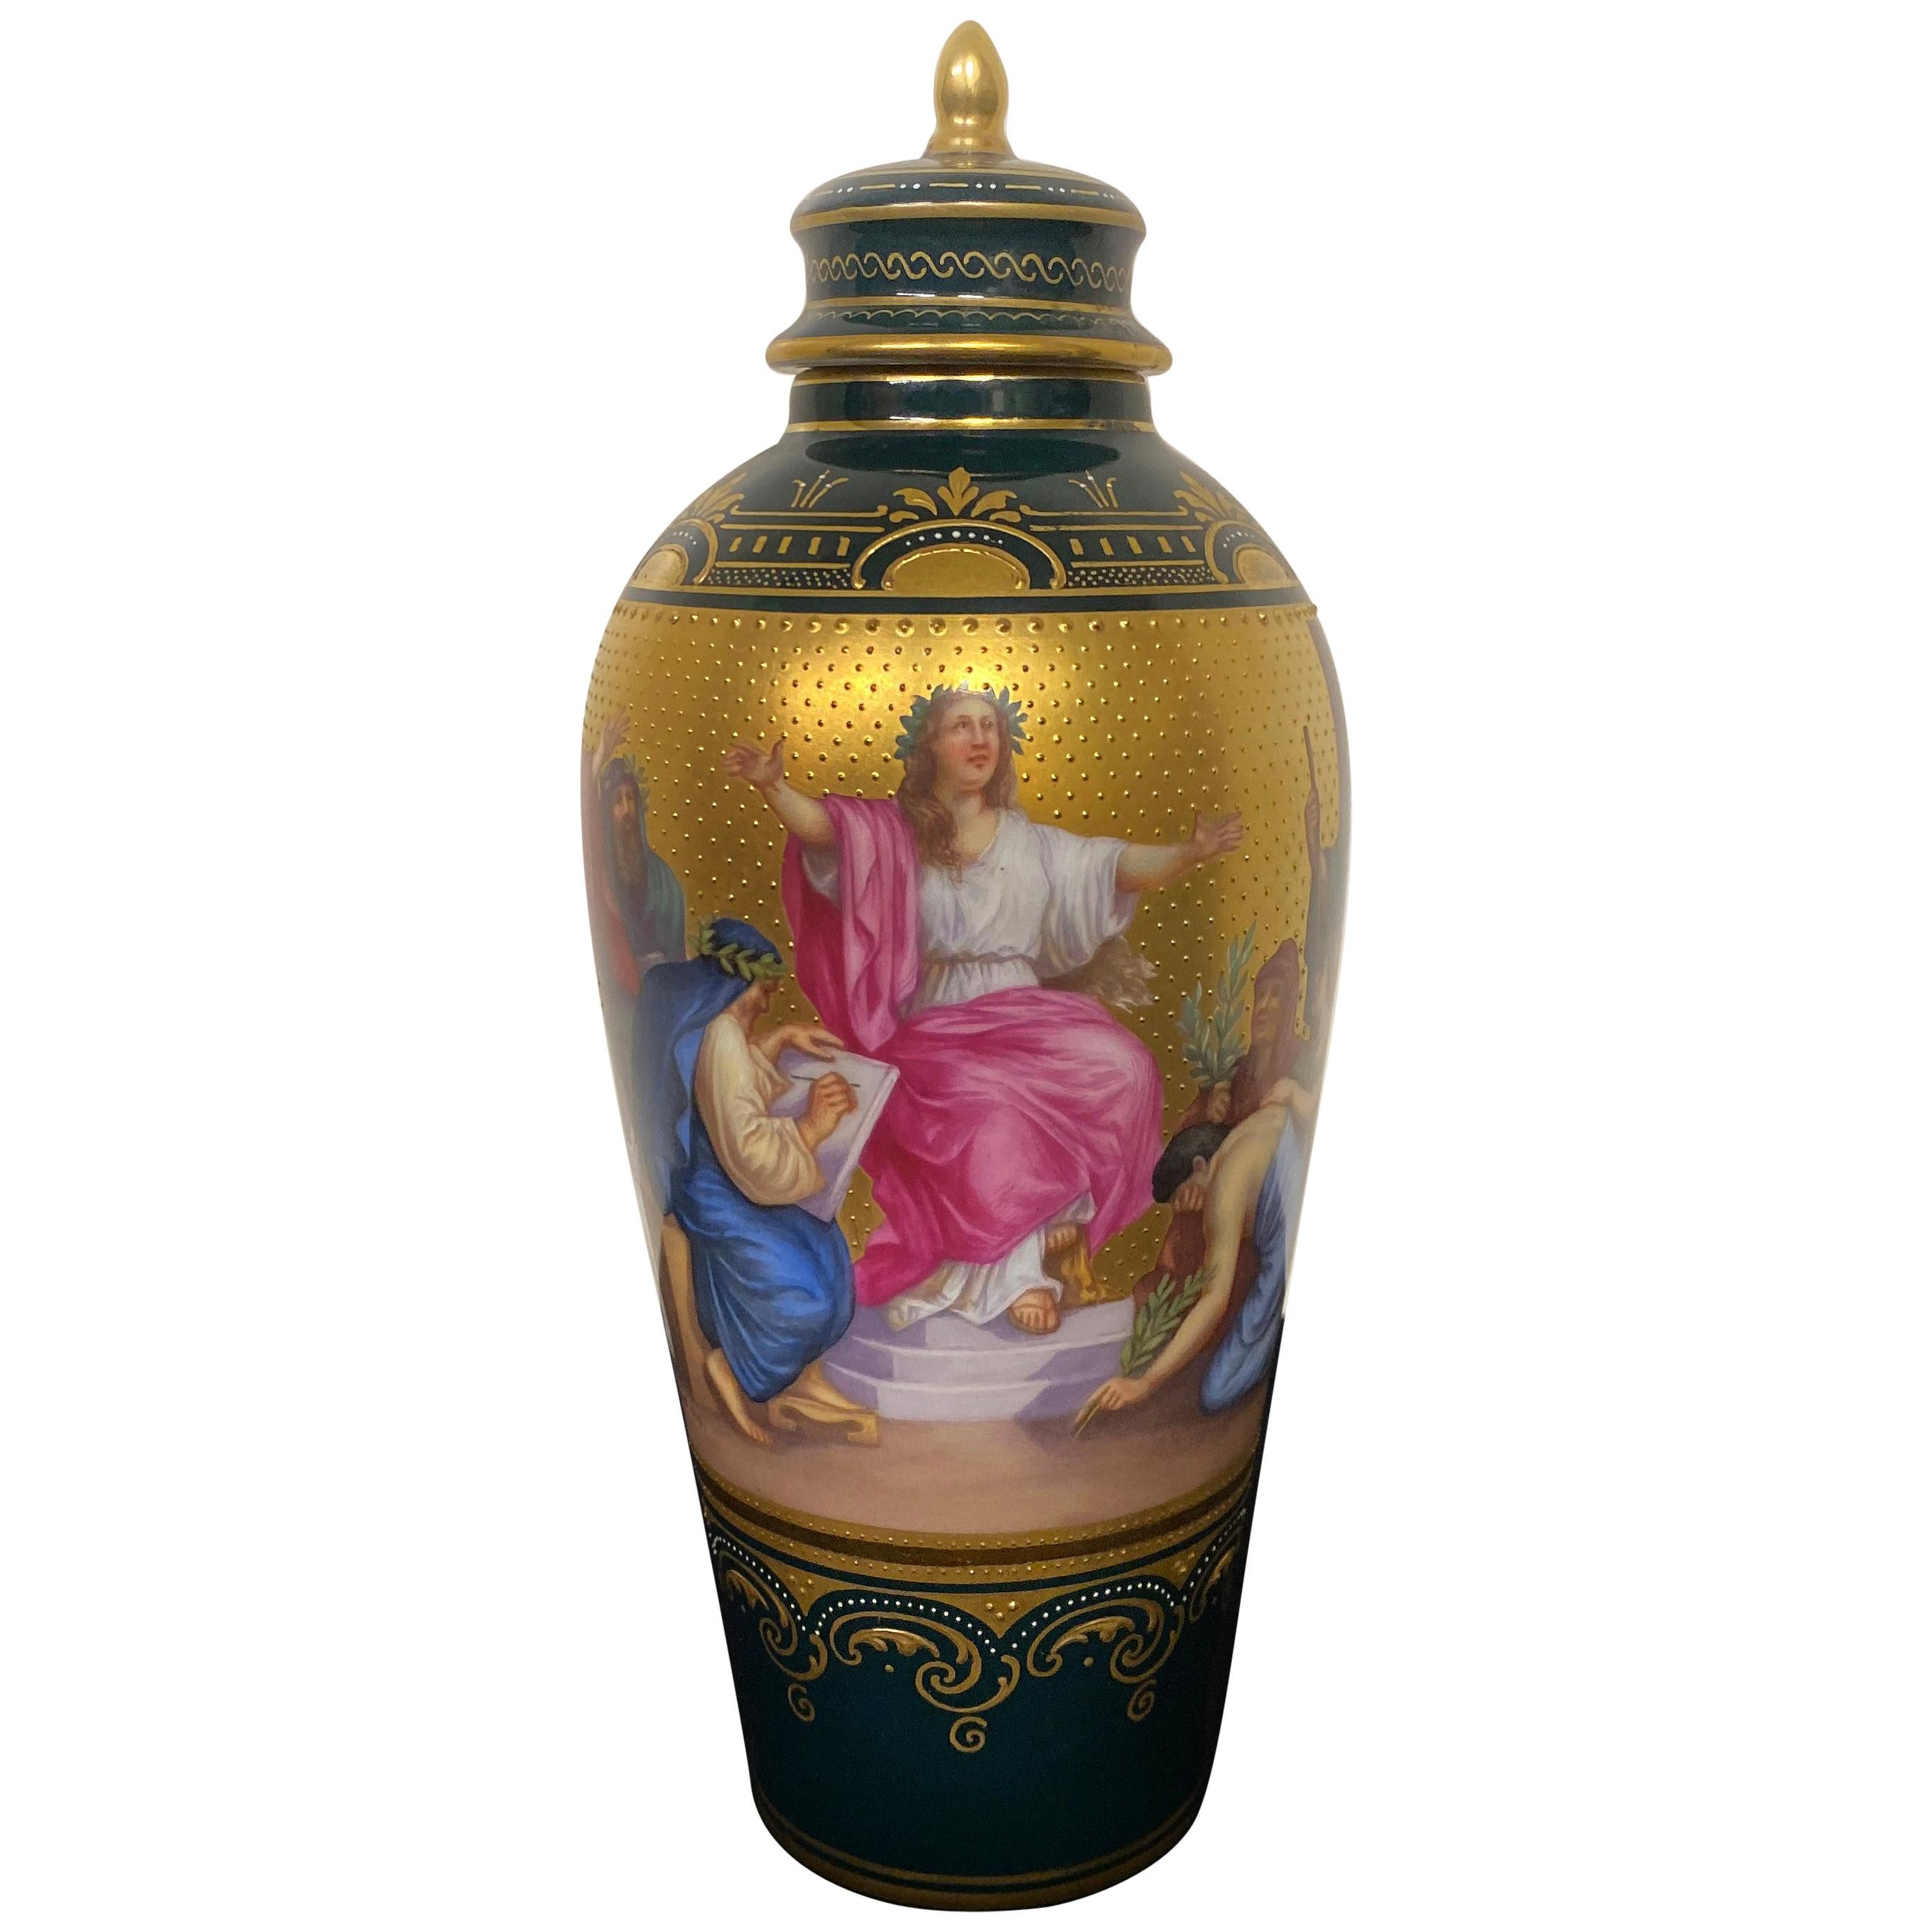 Precioso jarrón de porcelana Royal Vienna de finales del siglo XIX que representa a Apolo